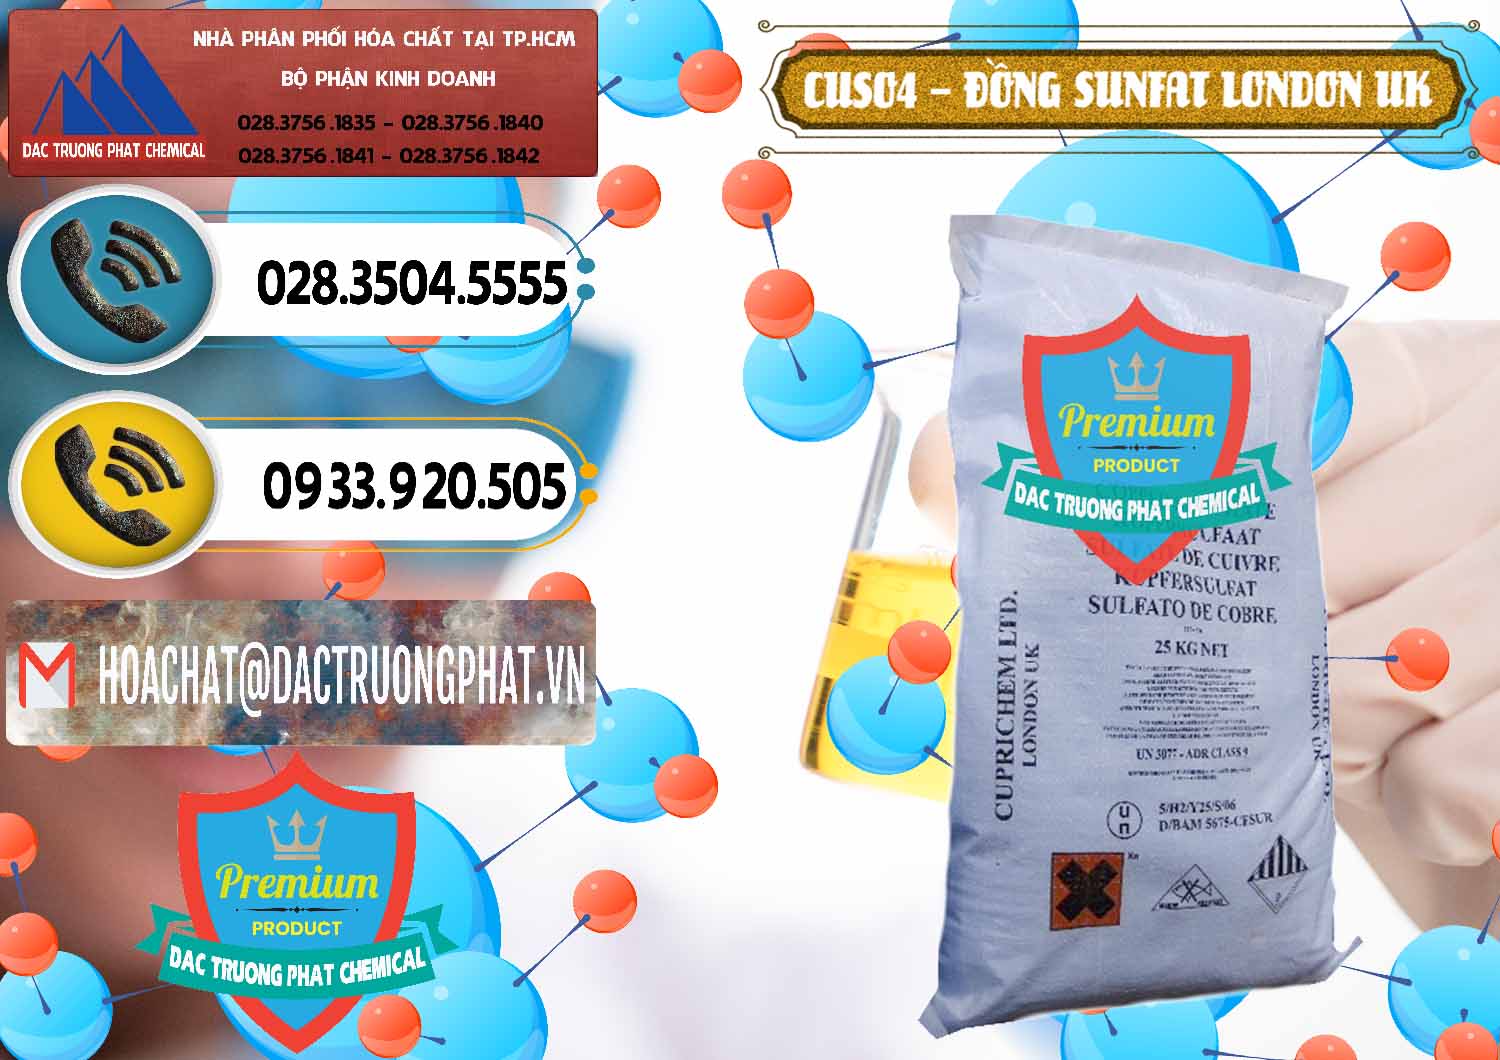 Công ty chuyên phân phối ( bán ) CuSO4 – Đồng Sunfat Anh Uk Kingdoms - 0478 - Cung cấp ( nhập khẩu ) hóa chất tại TP.HCM - hoachatdetnhuom.vn